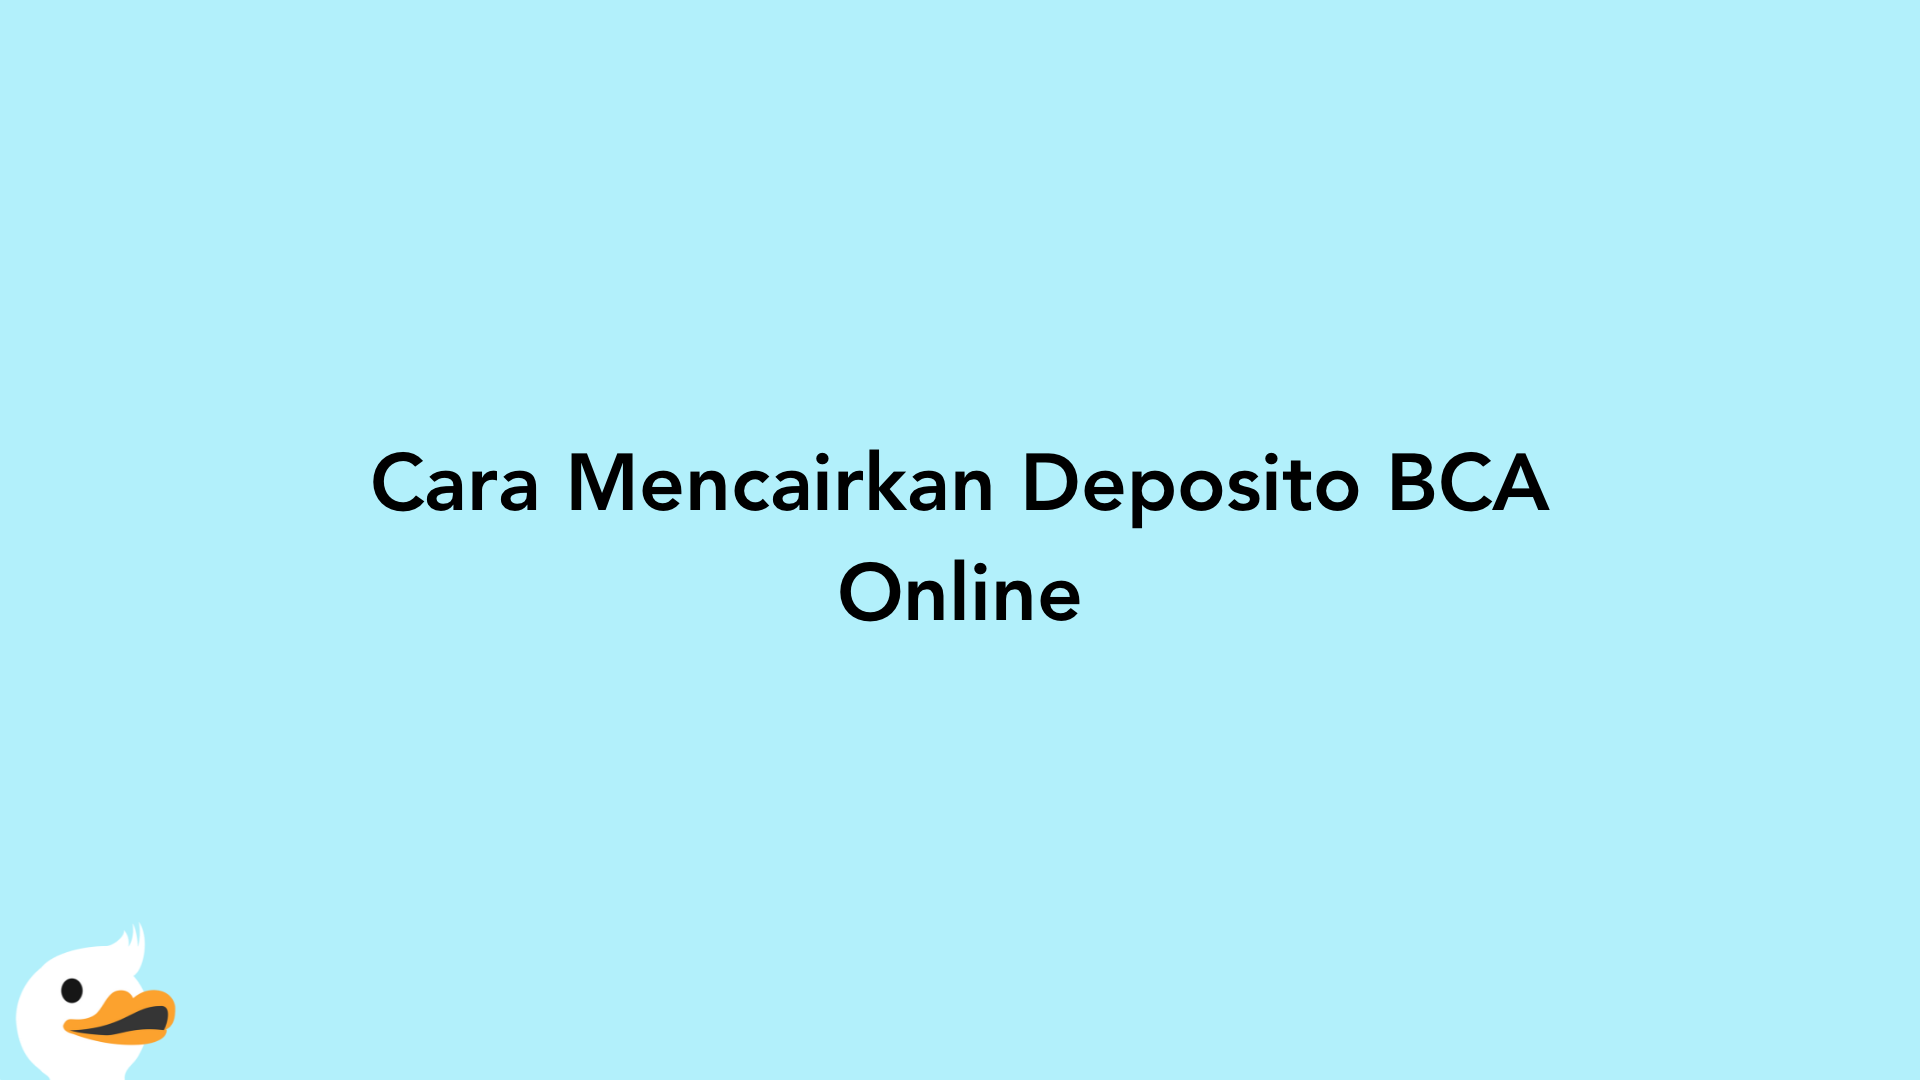 Cara Mencairkan Deposito BCA Online